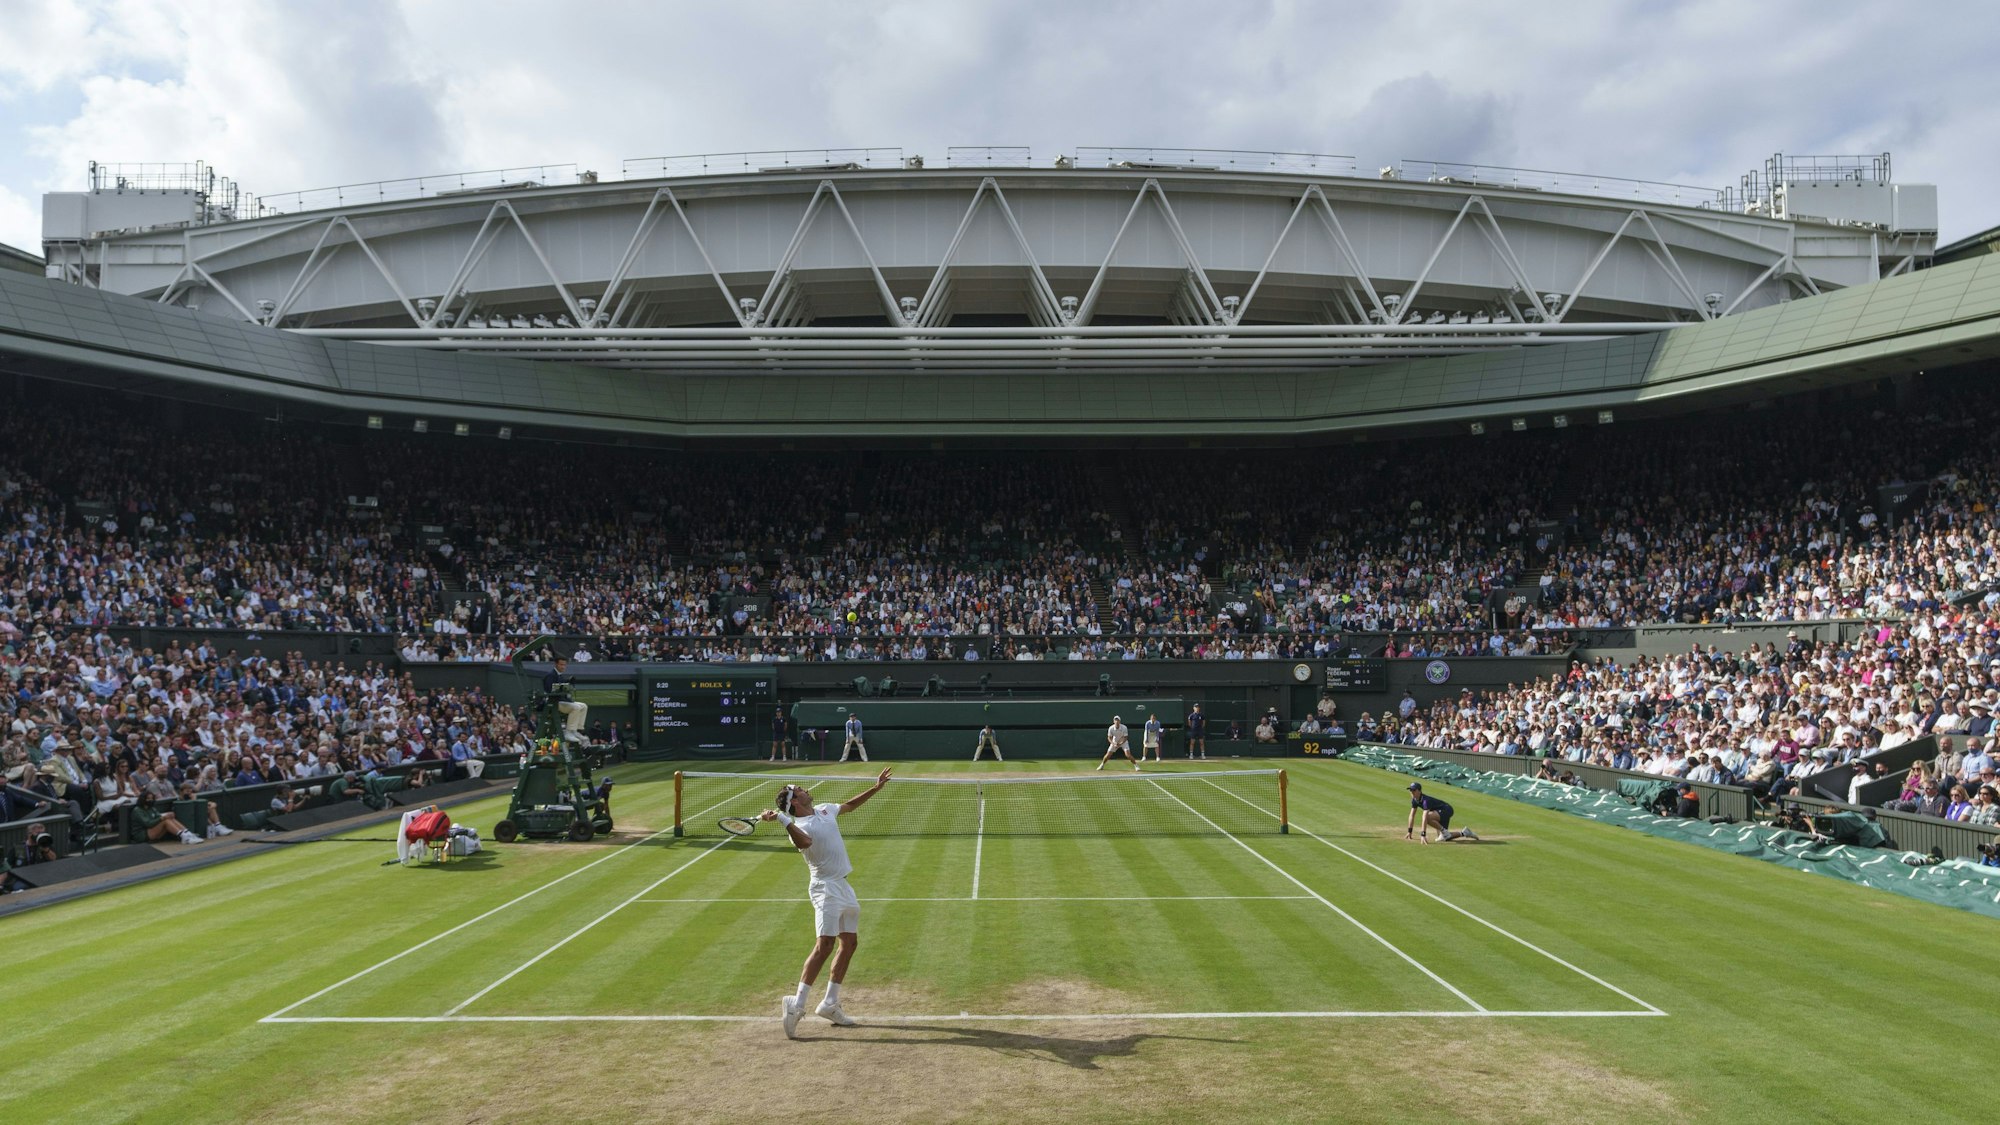 Roger Federer (vorne) schlägt auf dem Centre Court auf.